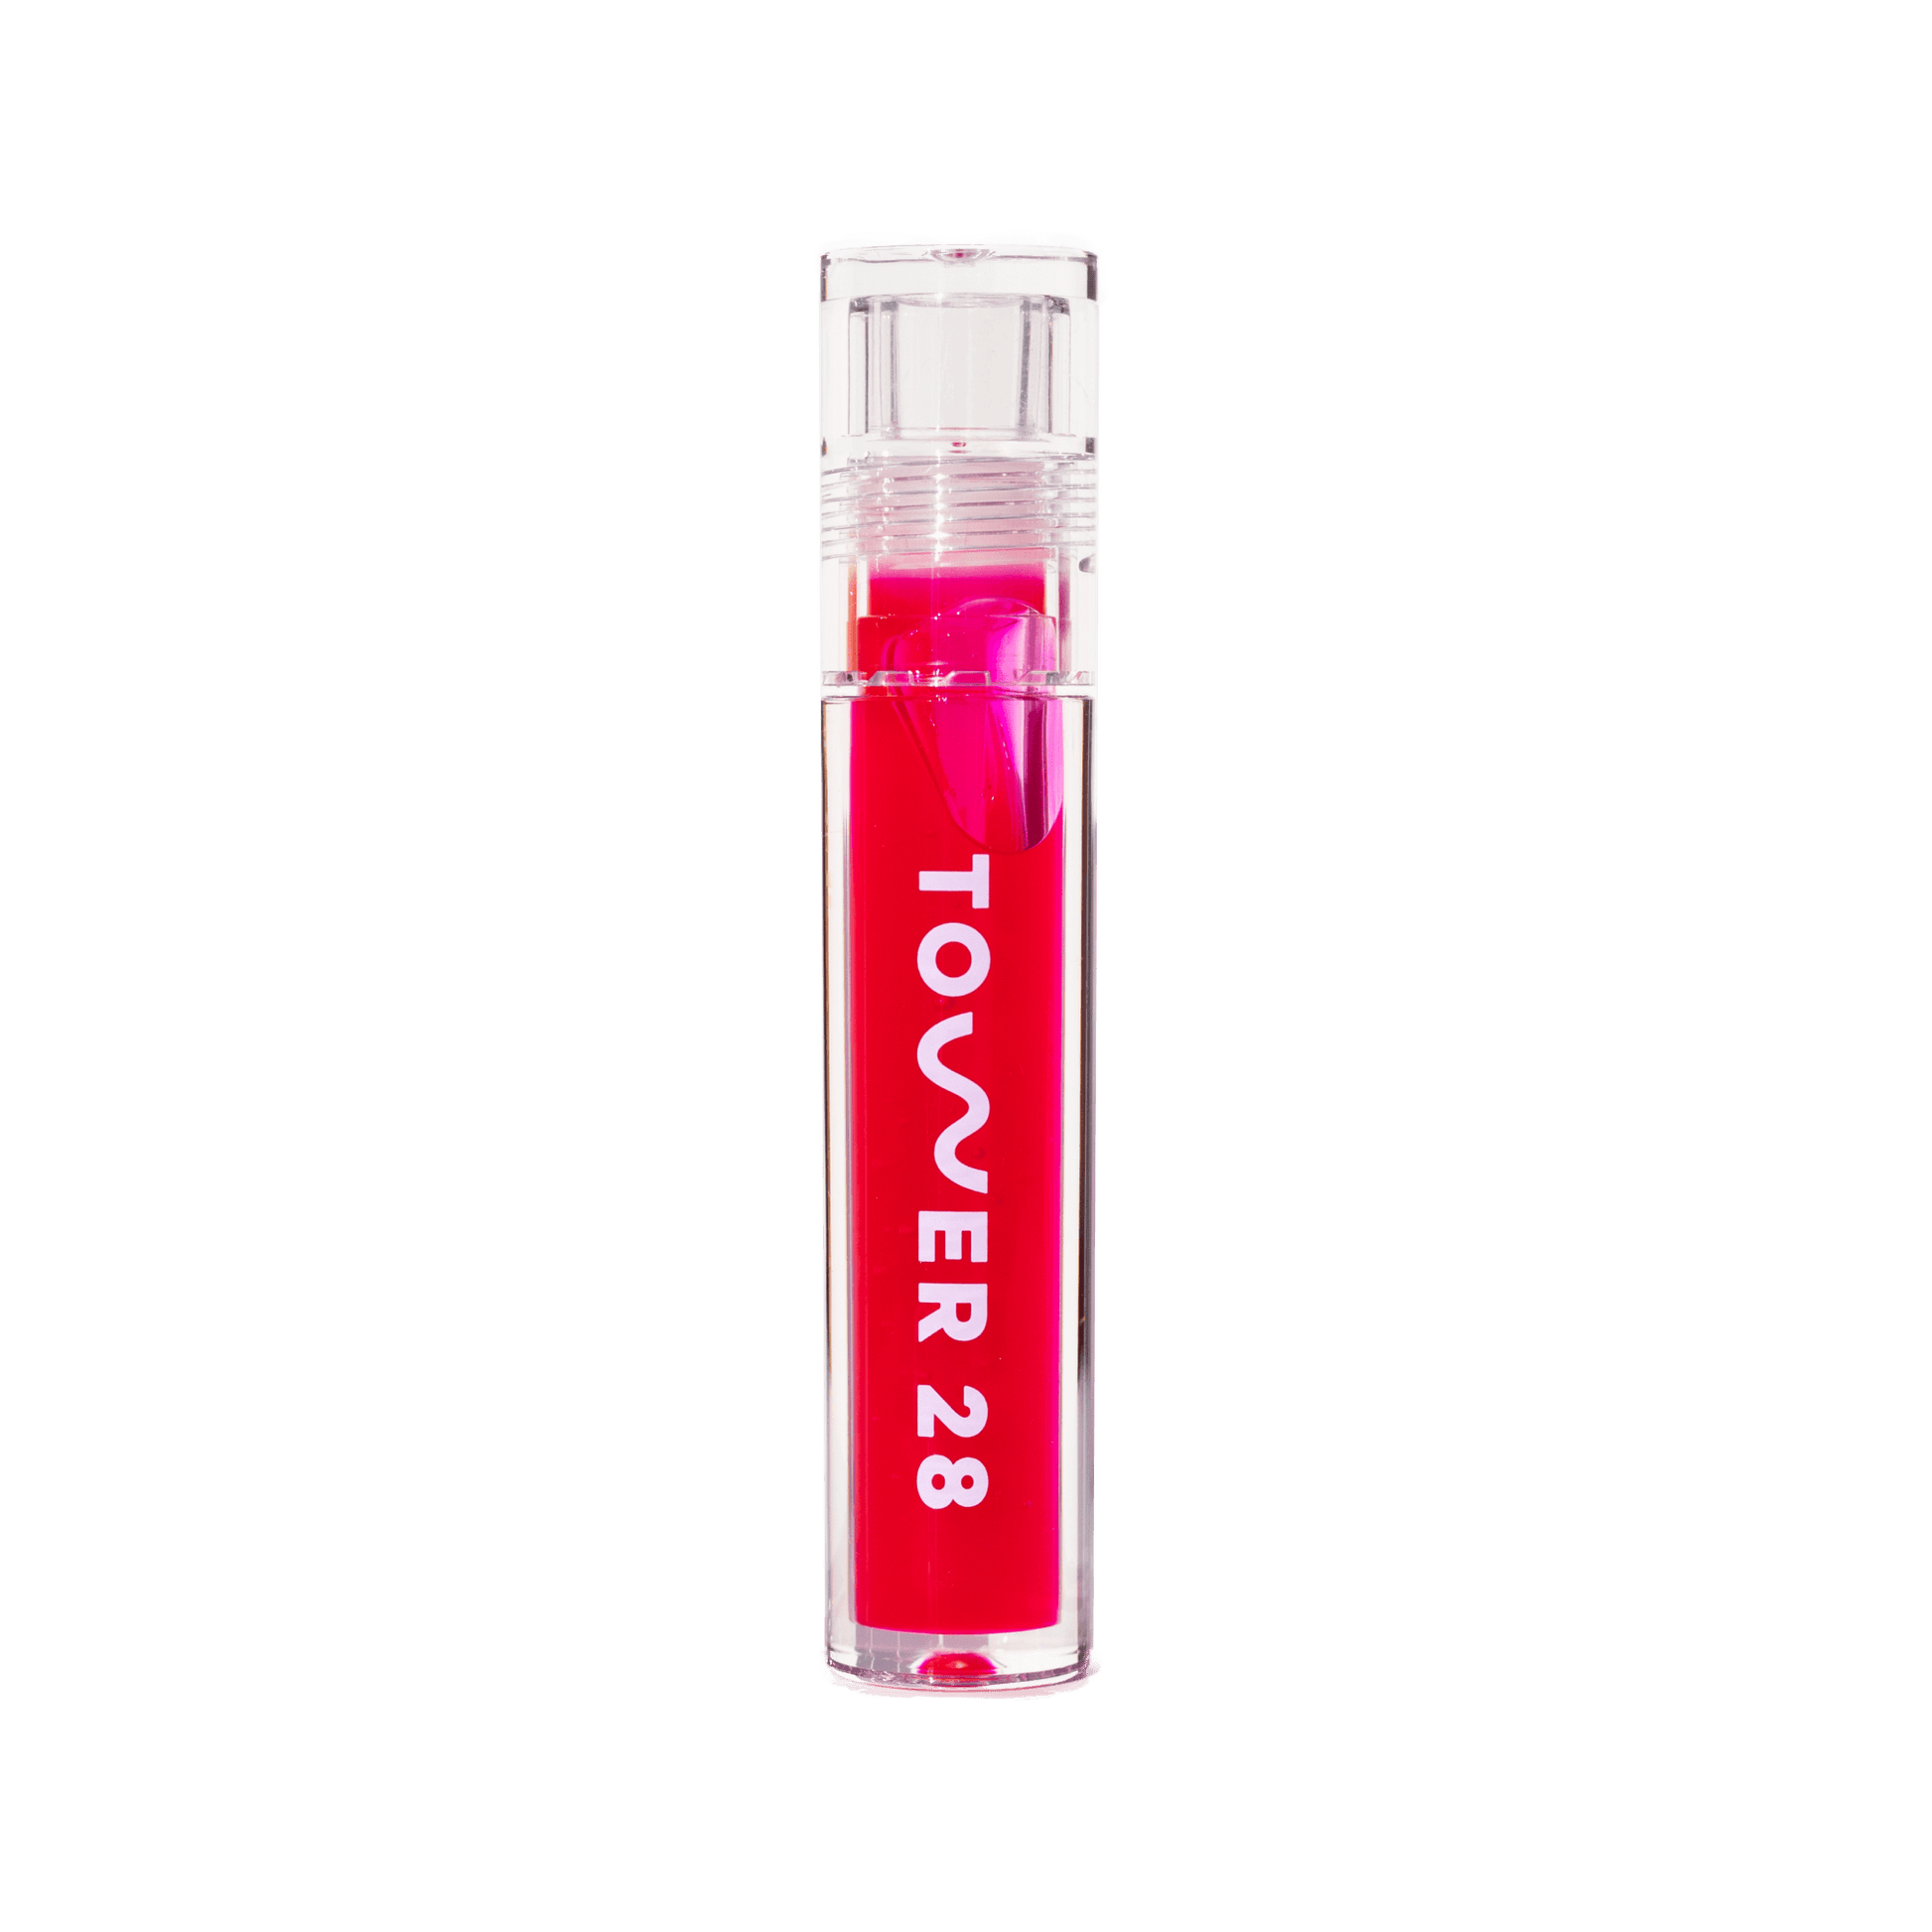 The Tower 28 Beauty ShineOn Lip Jelly in the shade XOXO